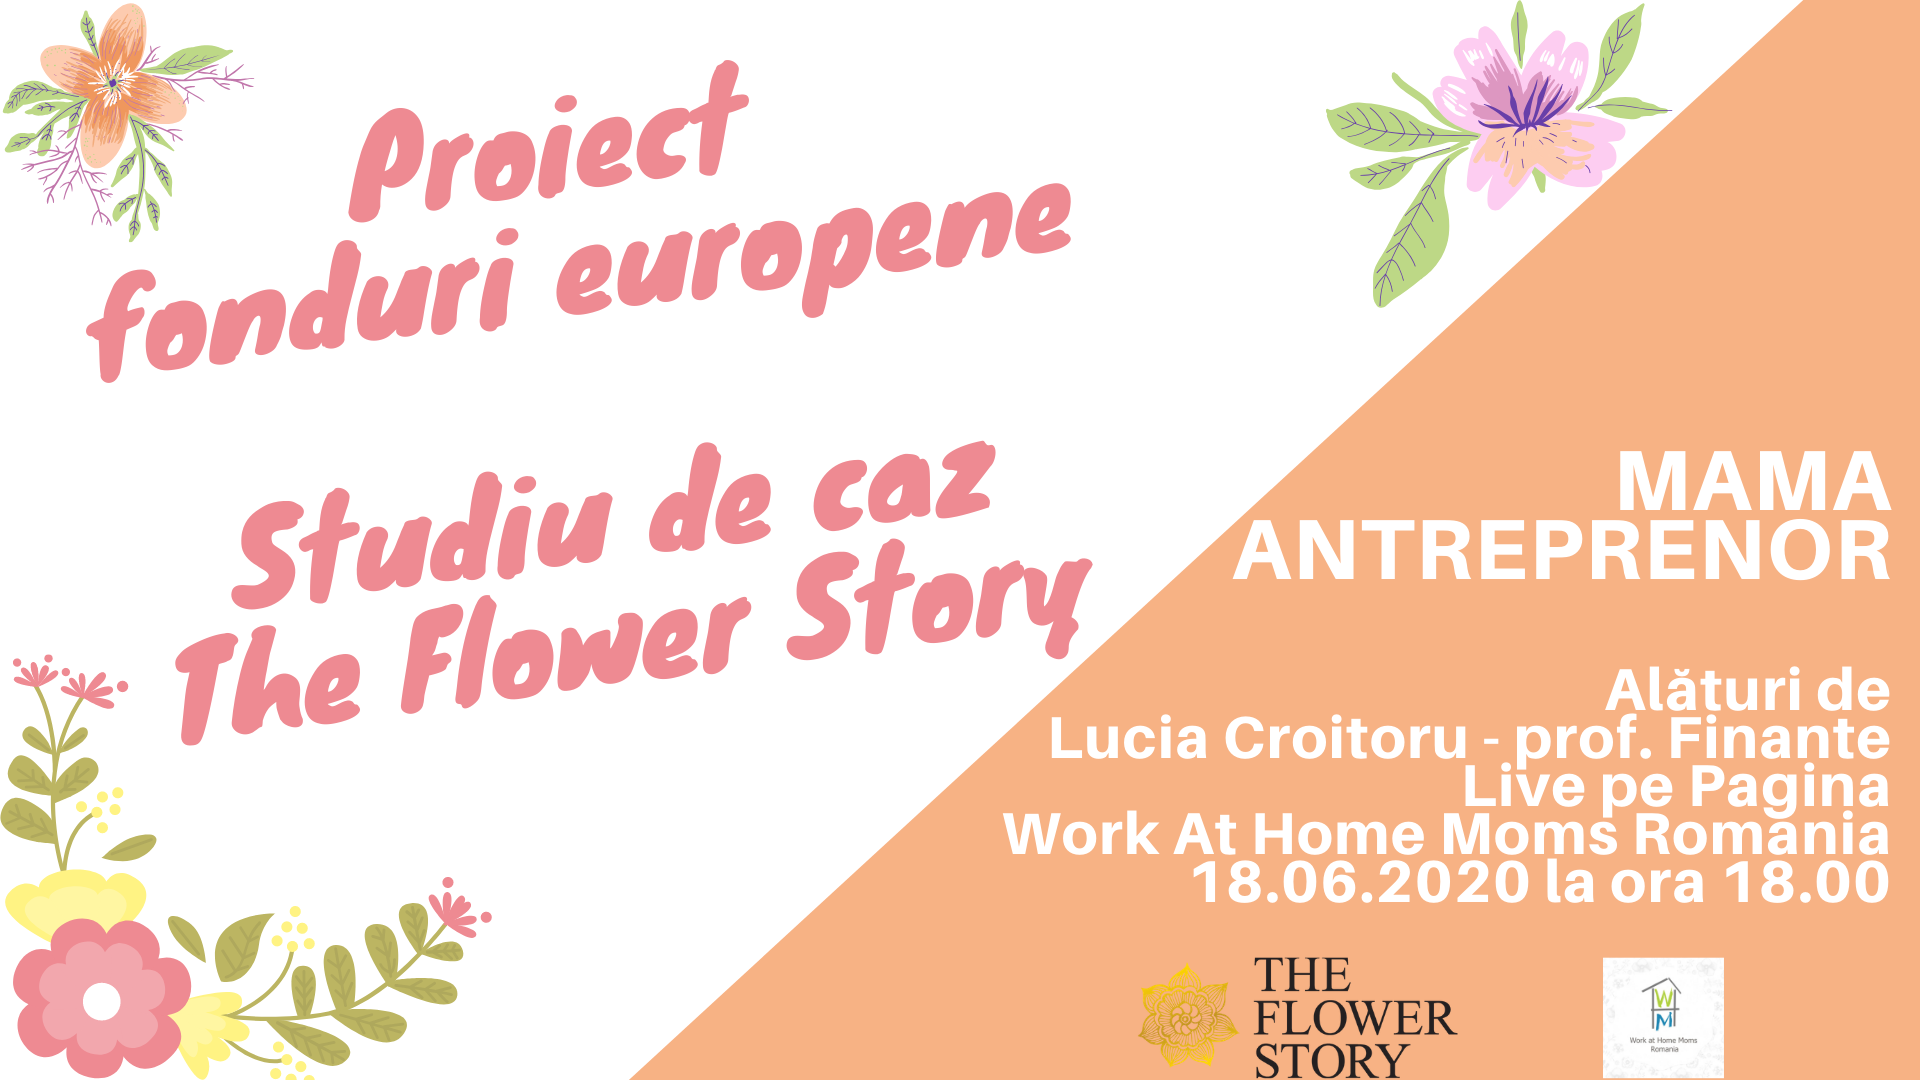 You are currently viewing Proiect fonduri europene – studiu de caz The Flower Shop, alături de Lucia Croitoru